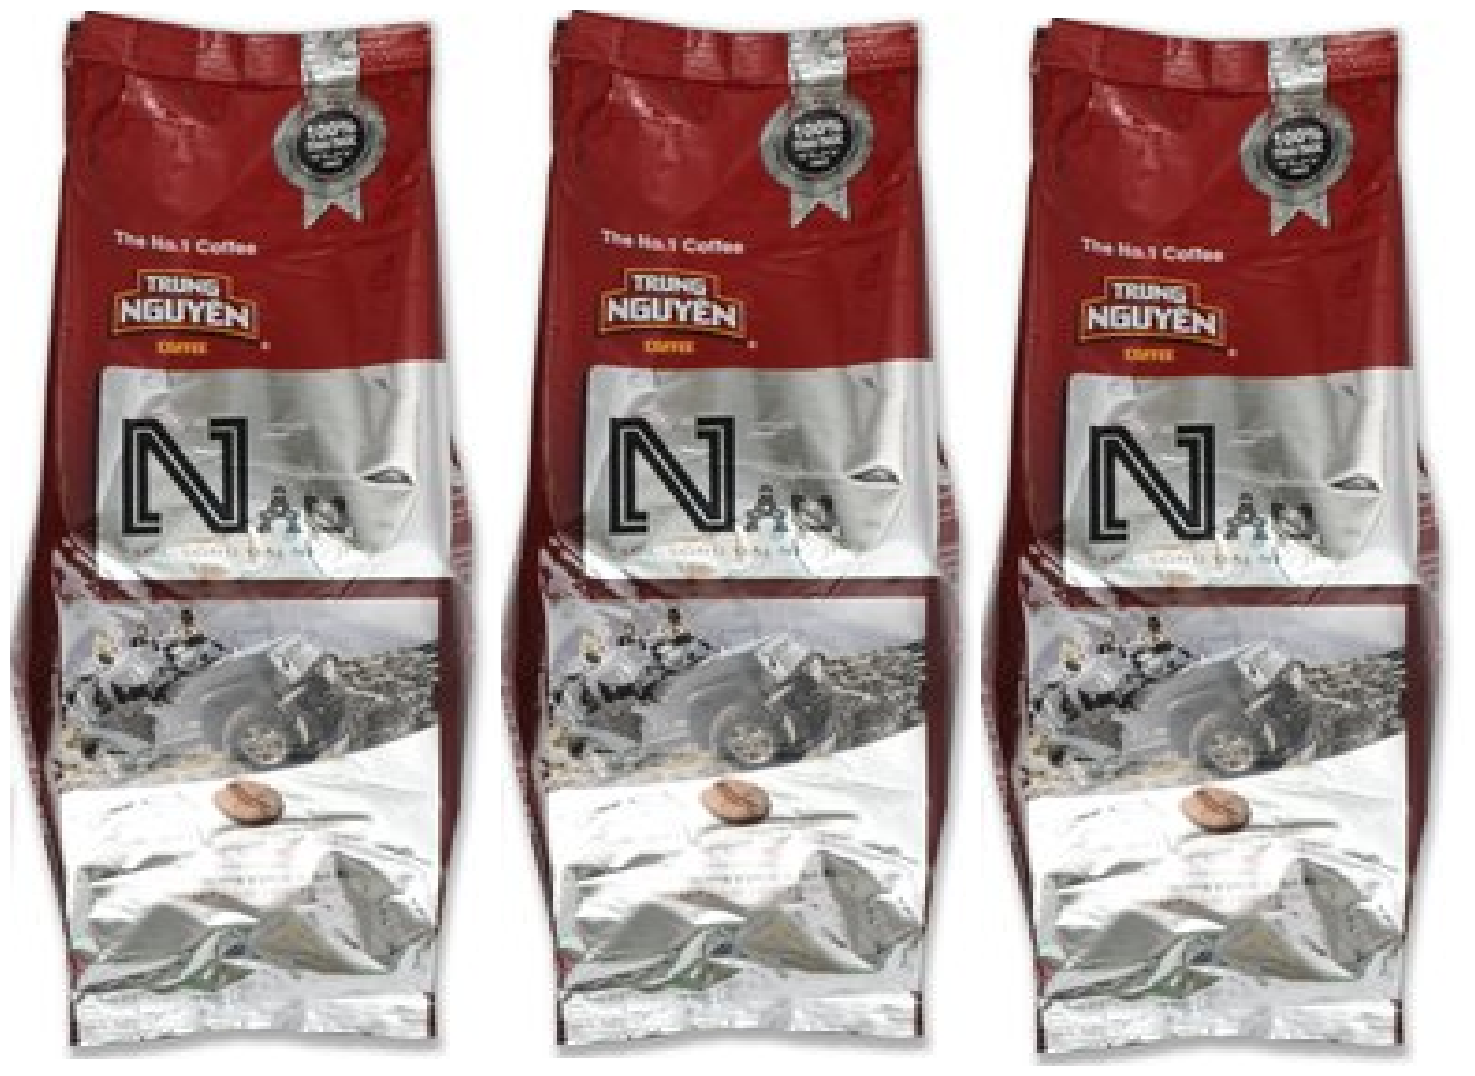 Вьетнамский молотый кофе "NAU" (TRUNG NGUYEN) три упаковки по 500г